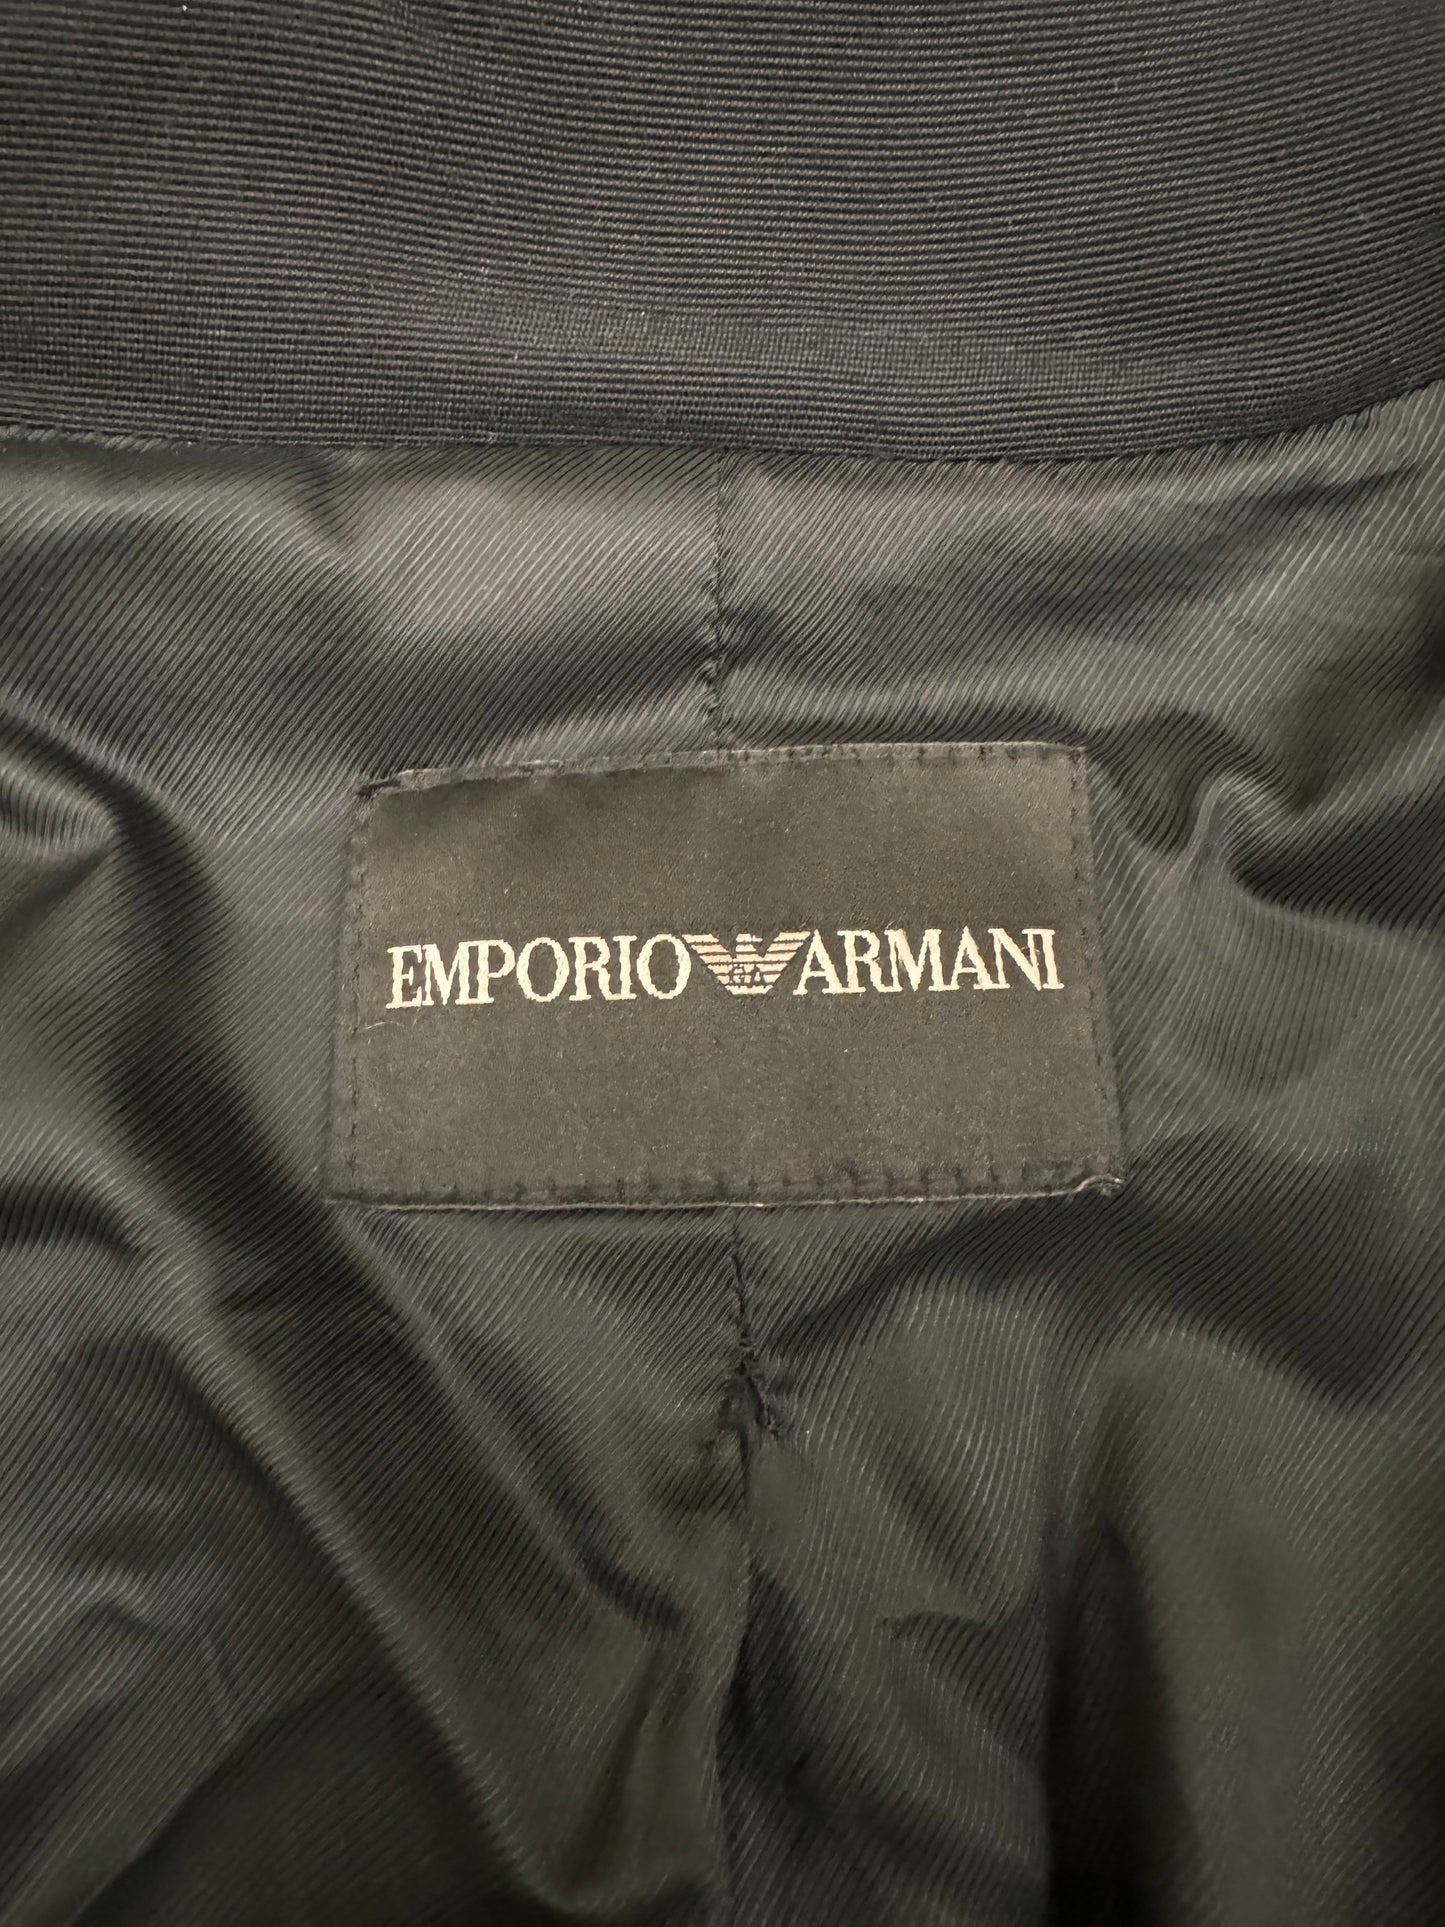 2007 秋冬 Emporio Armani 折纸效果短款夹克 (XS)